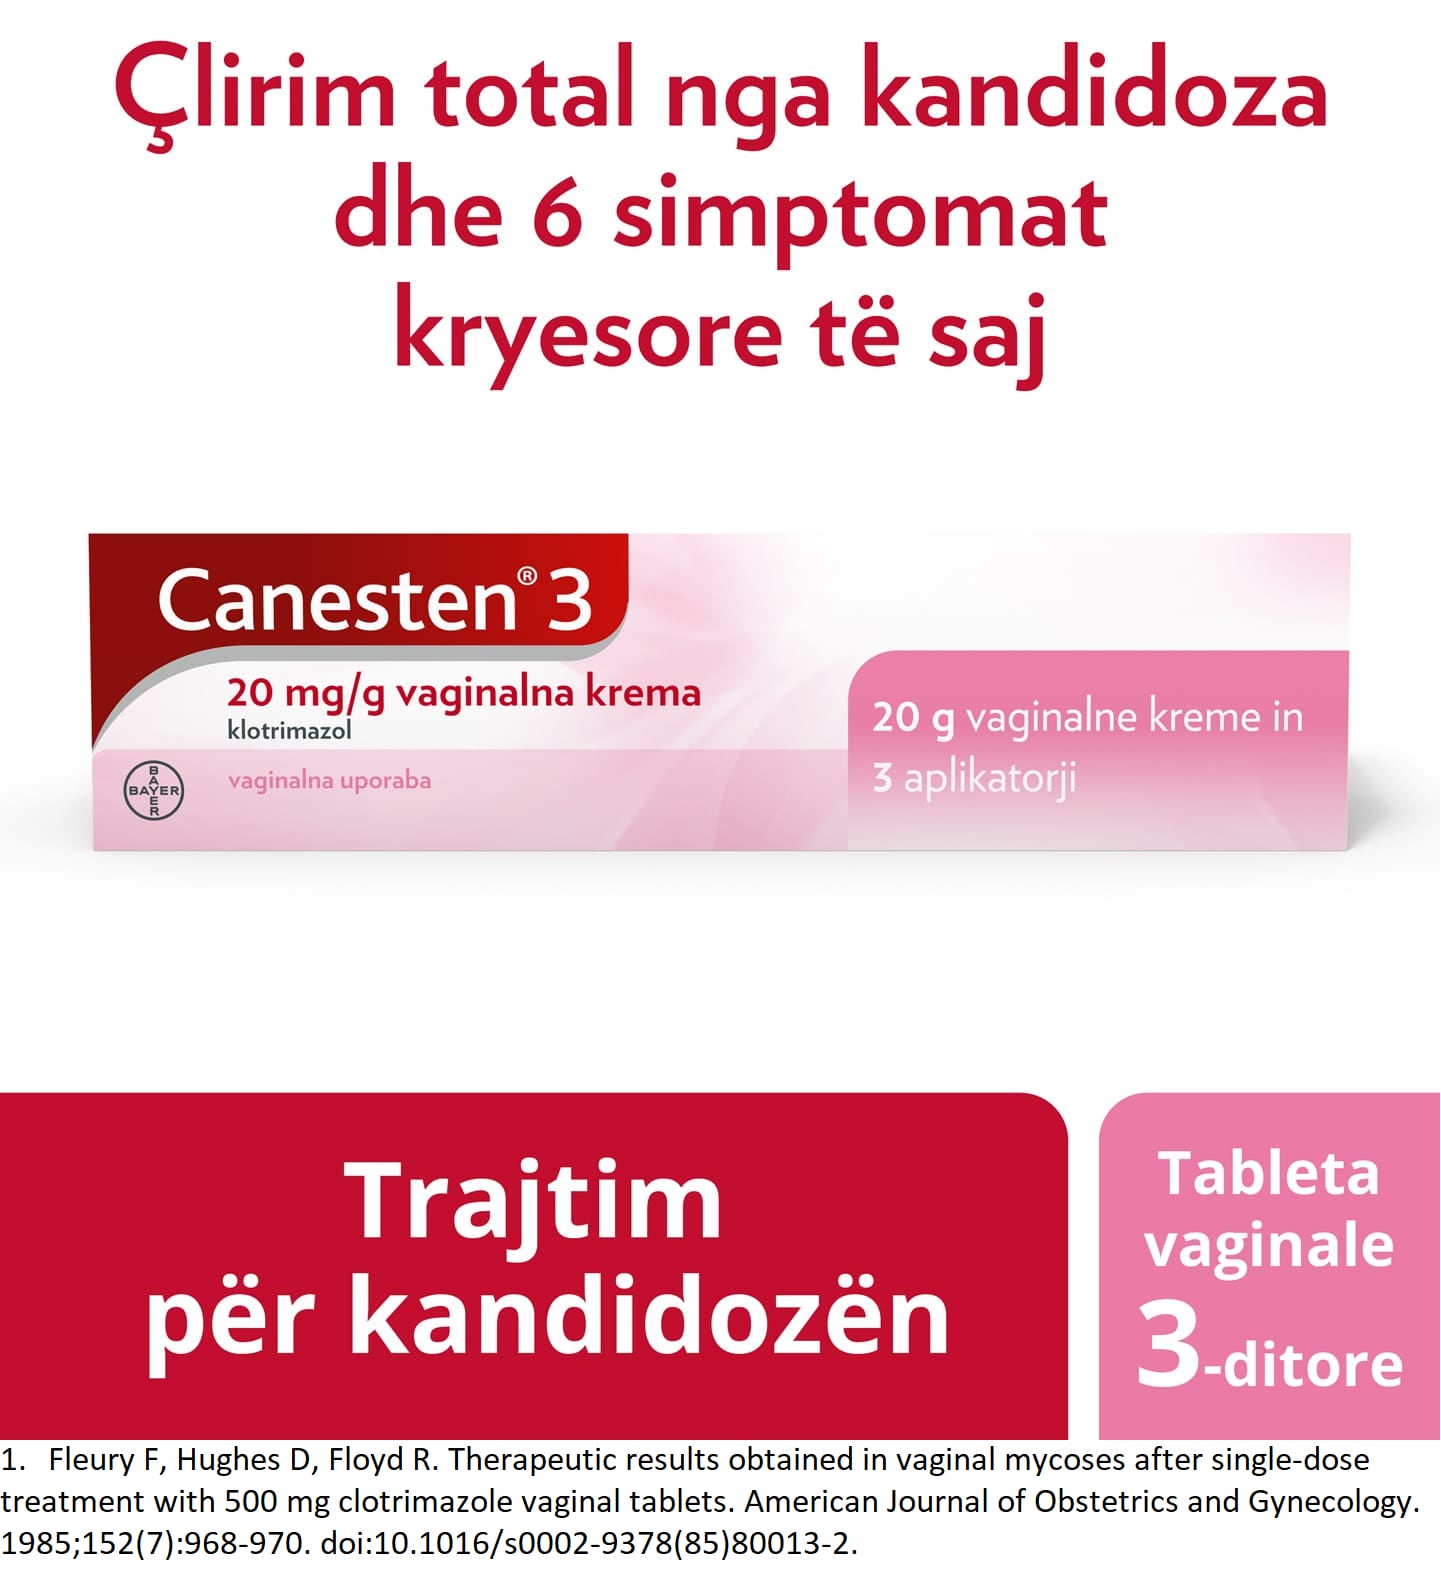 Krem për trajtim 3-ditor të kandidozës: Canesten® 3 20 mg/g krem vaginal për mjekim të kandidozës dhe aplikatorët, me titull në pjesën e sipërme: Lehtësim efektiv nga kandidoza dhe 6 simptomat kryesore të saj